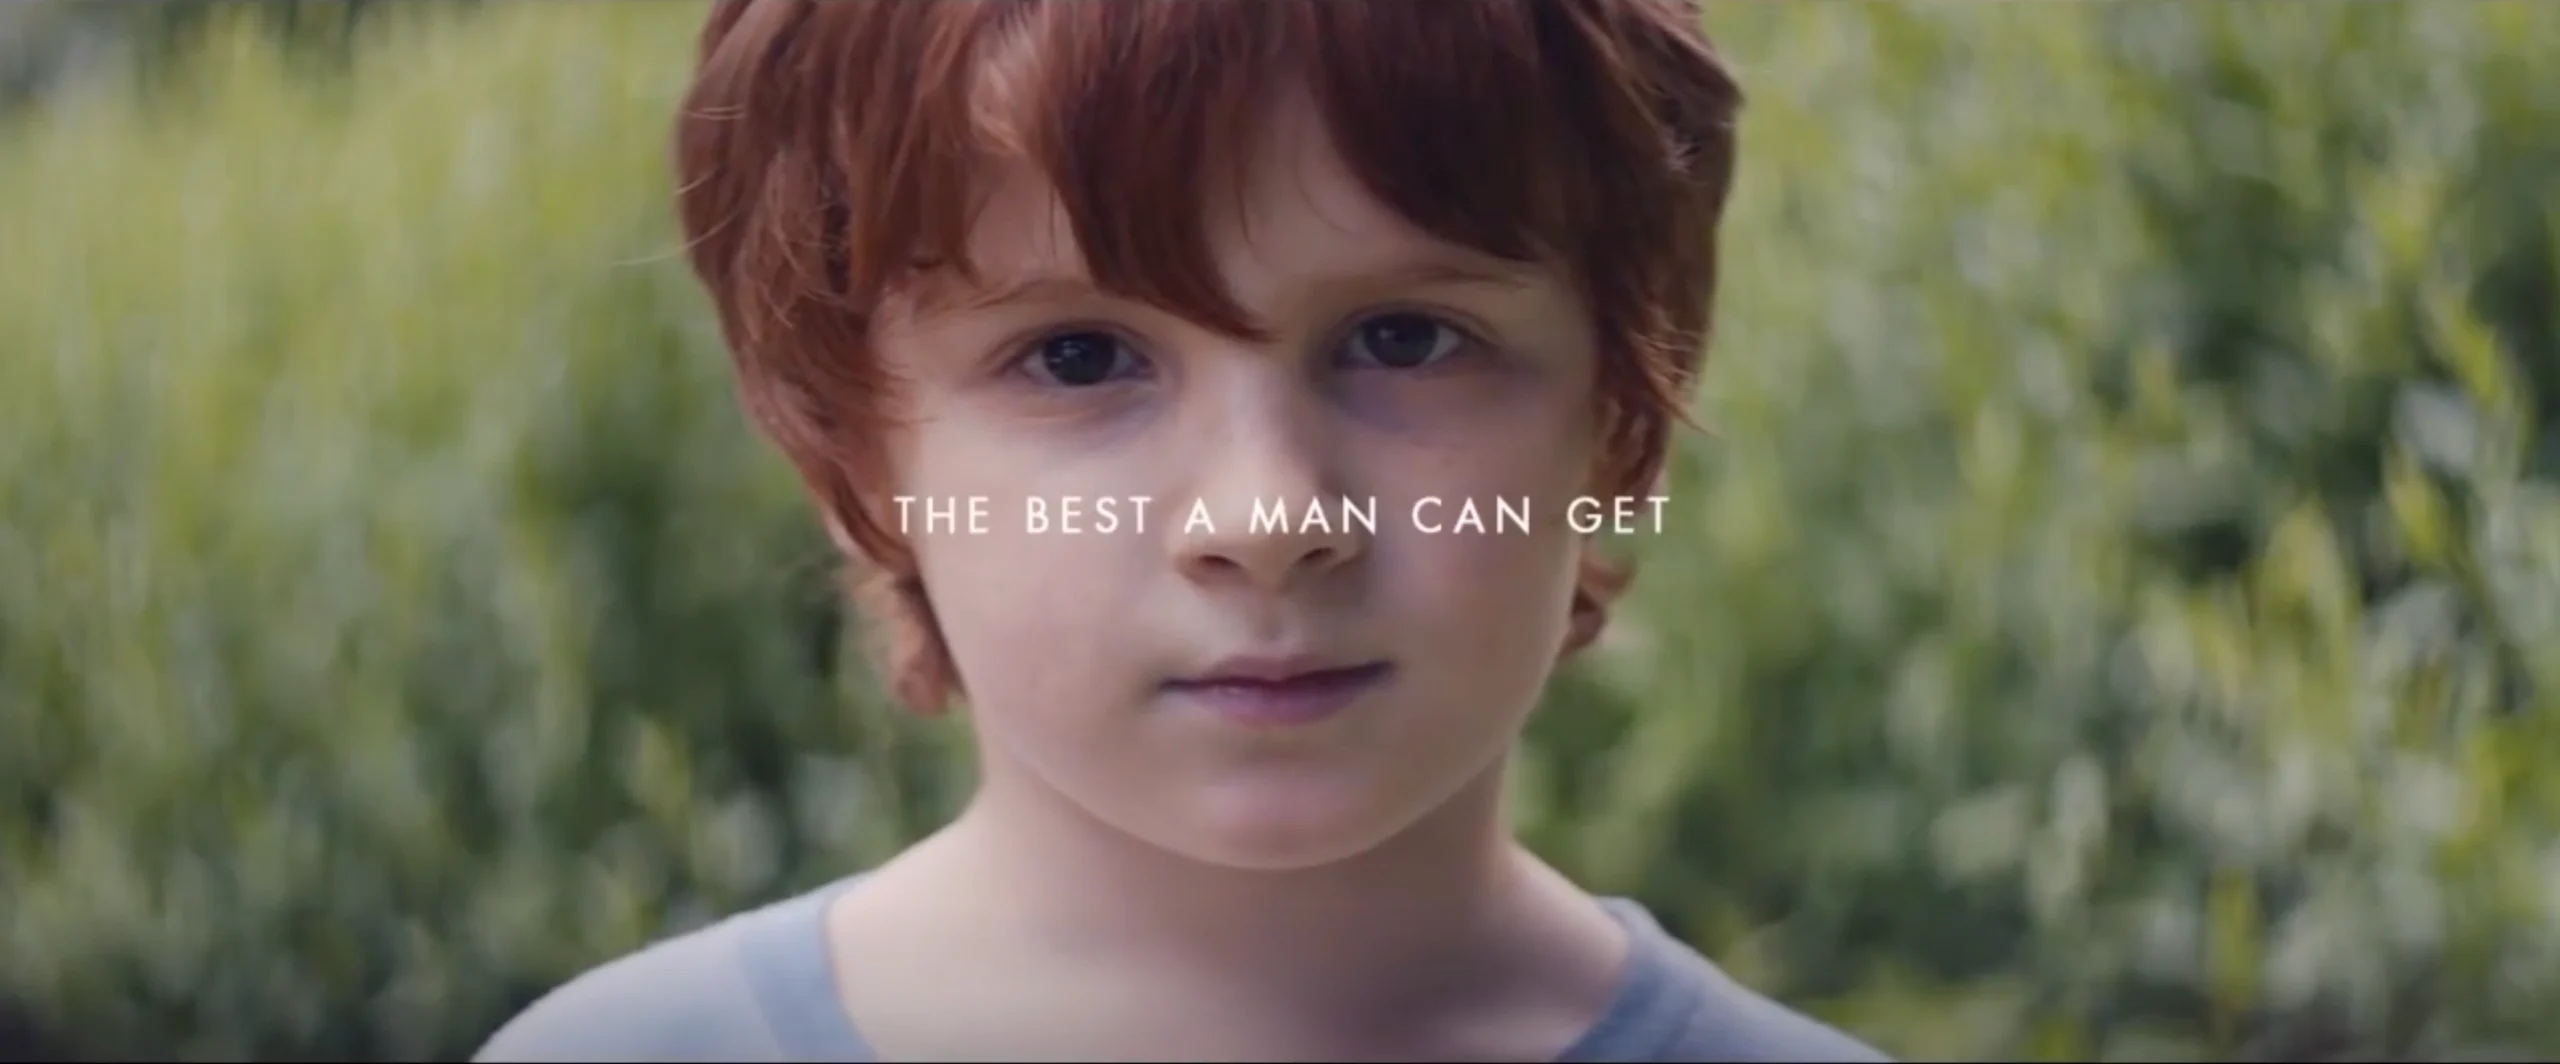 rosto suave de criança usado em publicidade criativa pela Gilette